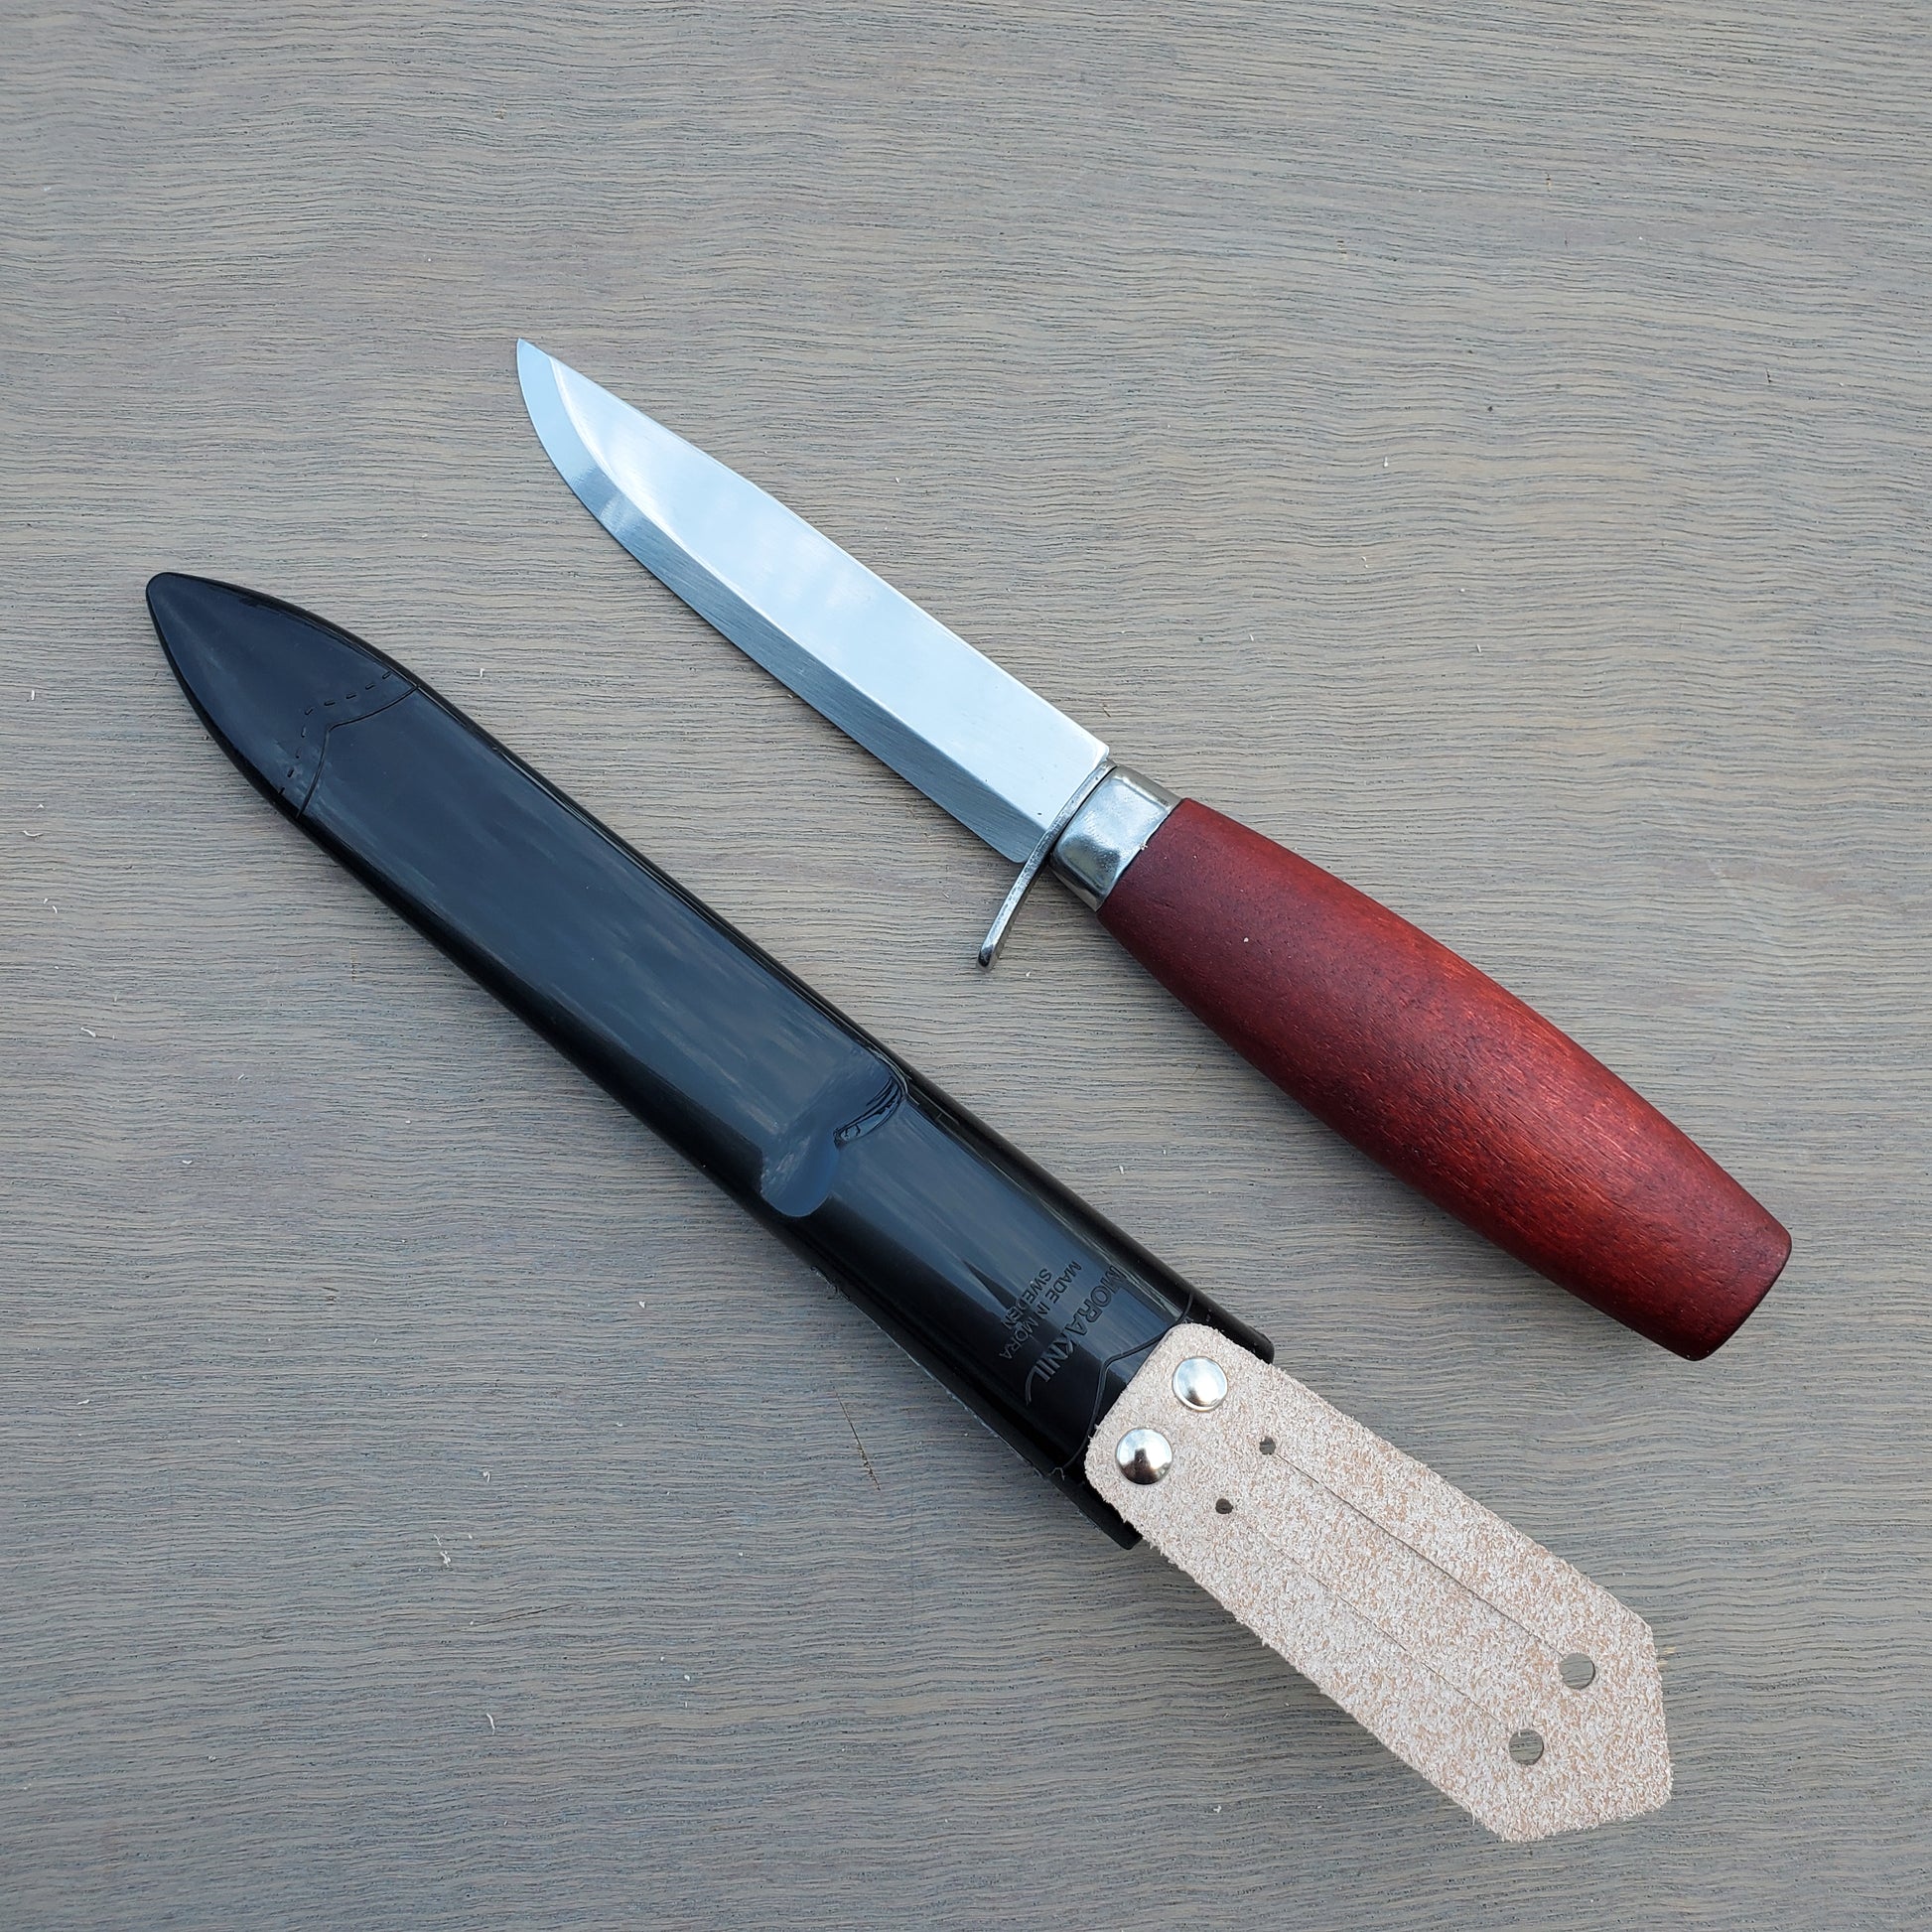 Morakniv hunting knives